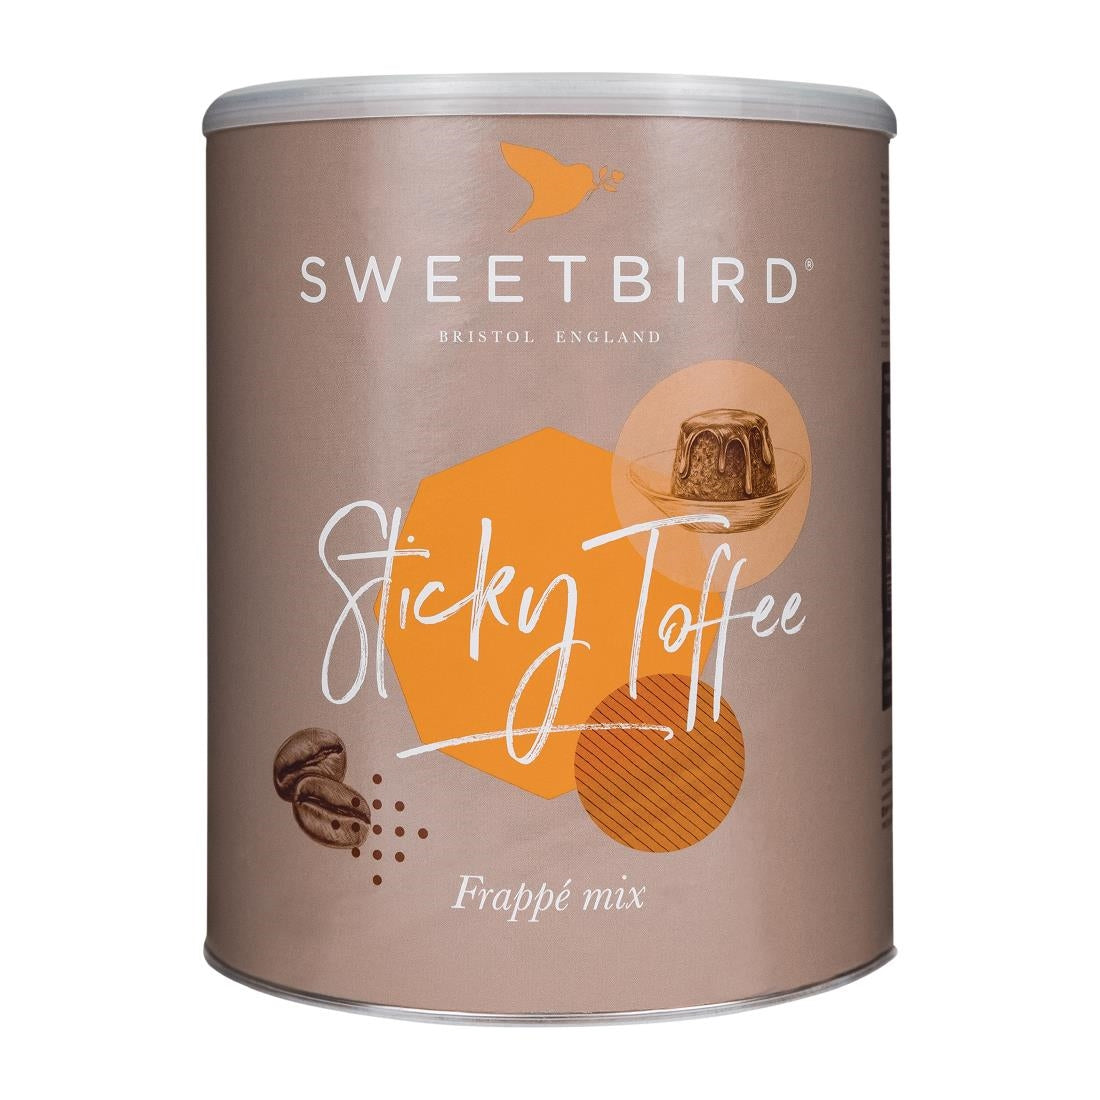 DX599 Sweetbird Sticky Toffee FrappÃ© Mix 2kg Tin